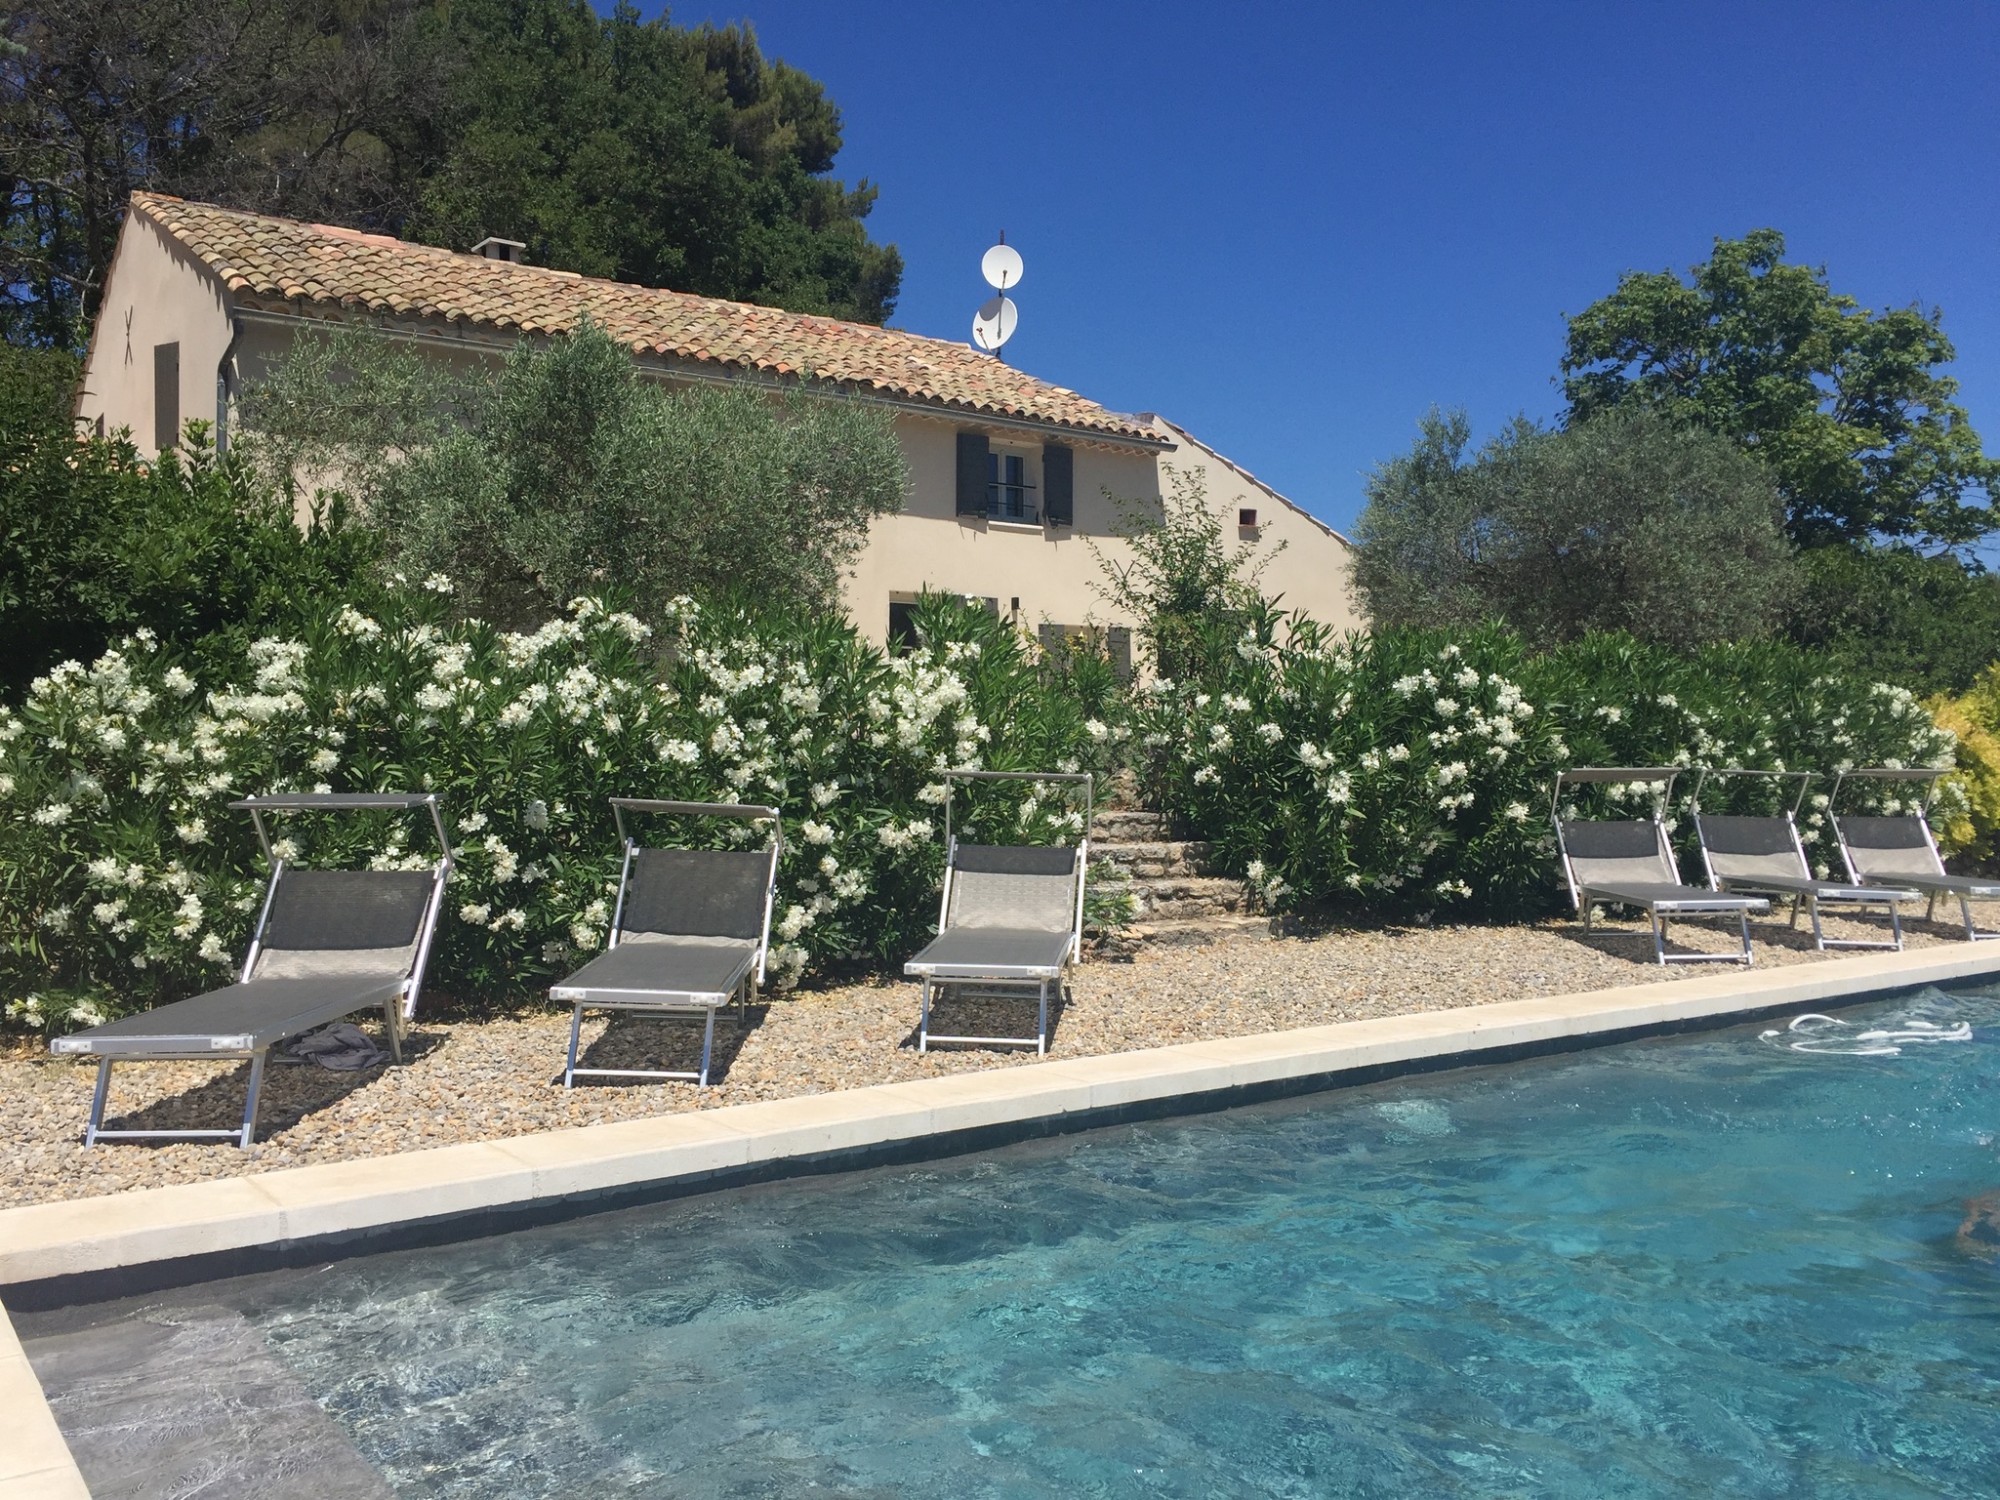 Location à Roussillon, face aux ocres, charmante bergerie rénovée avec piscine